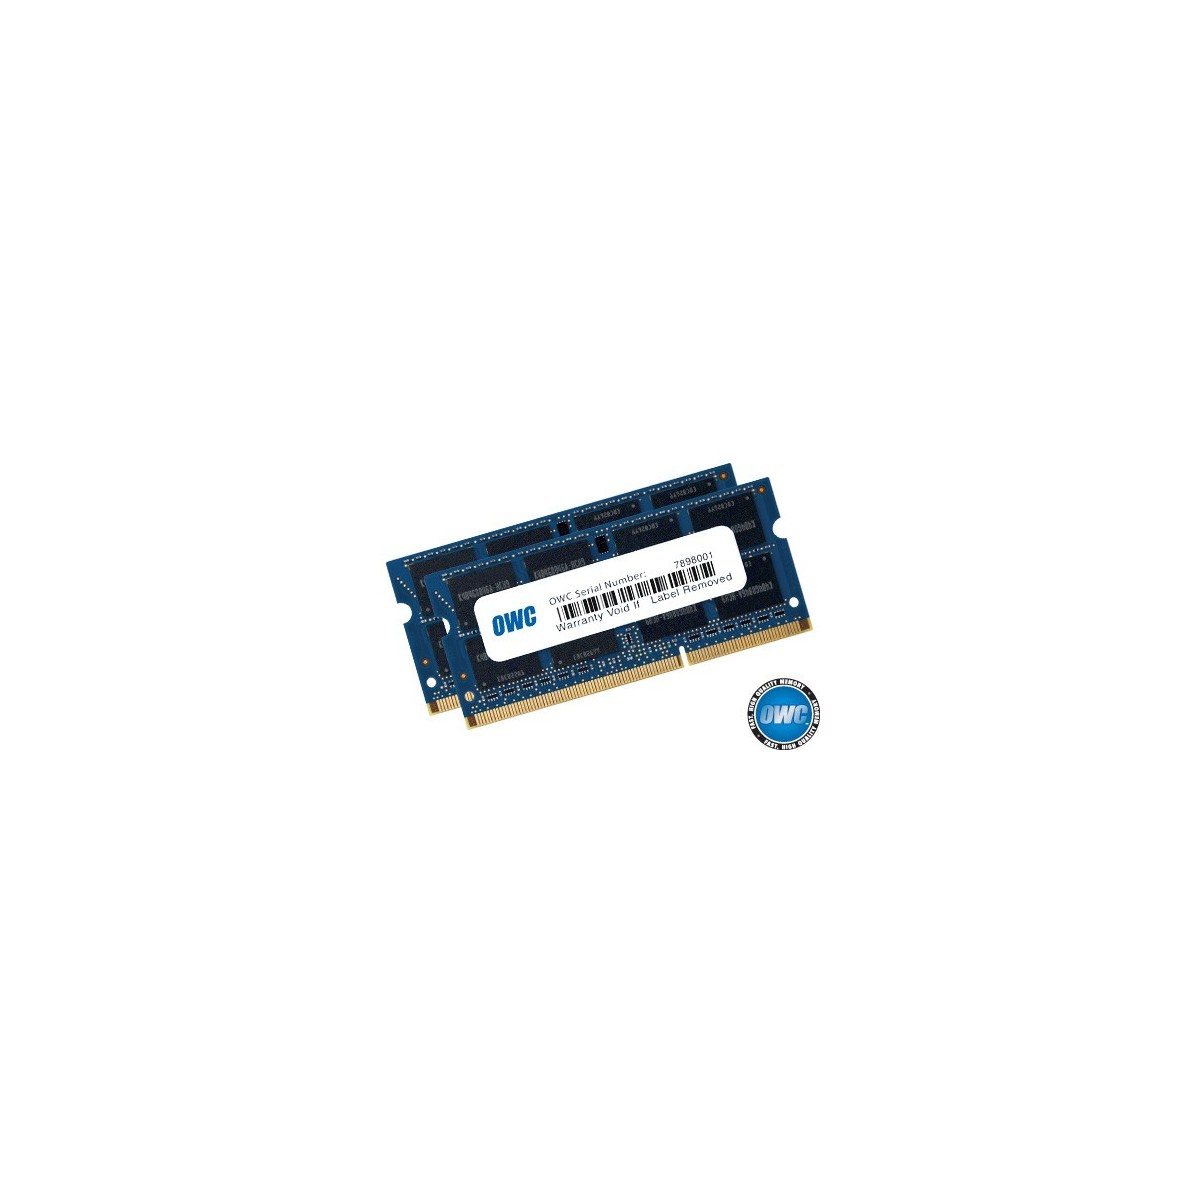 OWC OWC1867DDR3S32P - 32 GB - 2 x 16 GB - DDR3 - 1866 MHz - 204-pin SO-DIMM - Blue